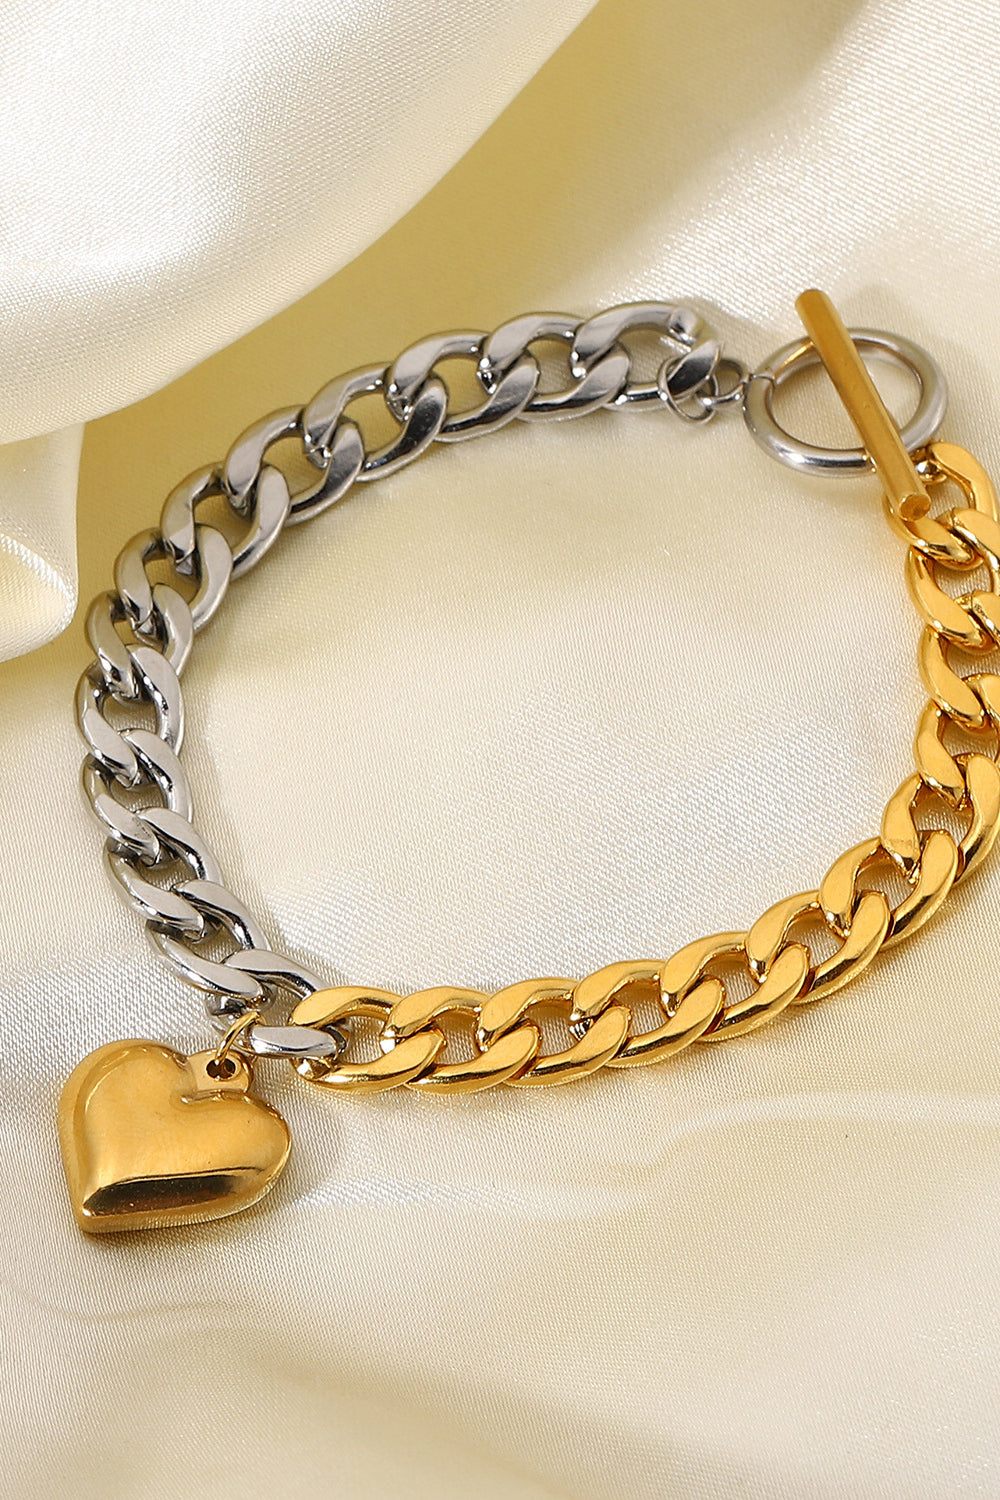 Chain Heart Charm Bracelet - Multicolored / One Size - Women’s Jewelry - Bracelets - 3 - 2024